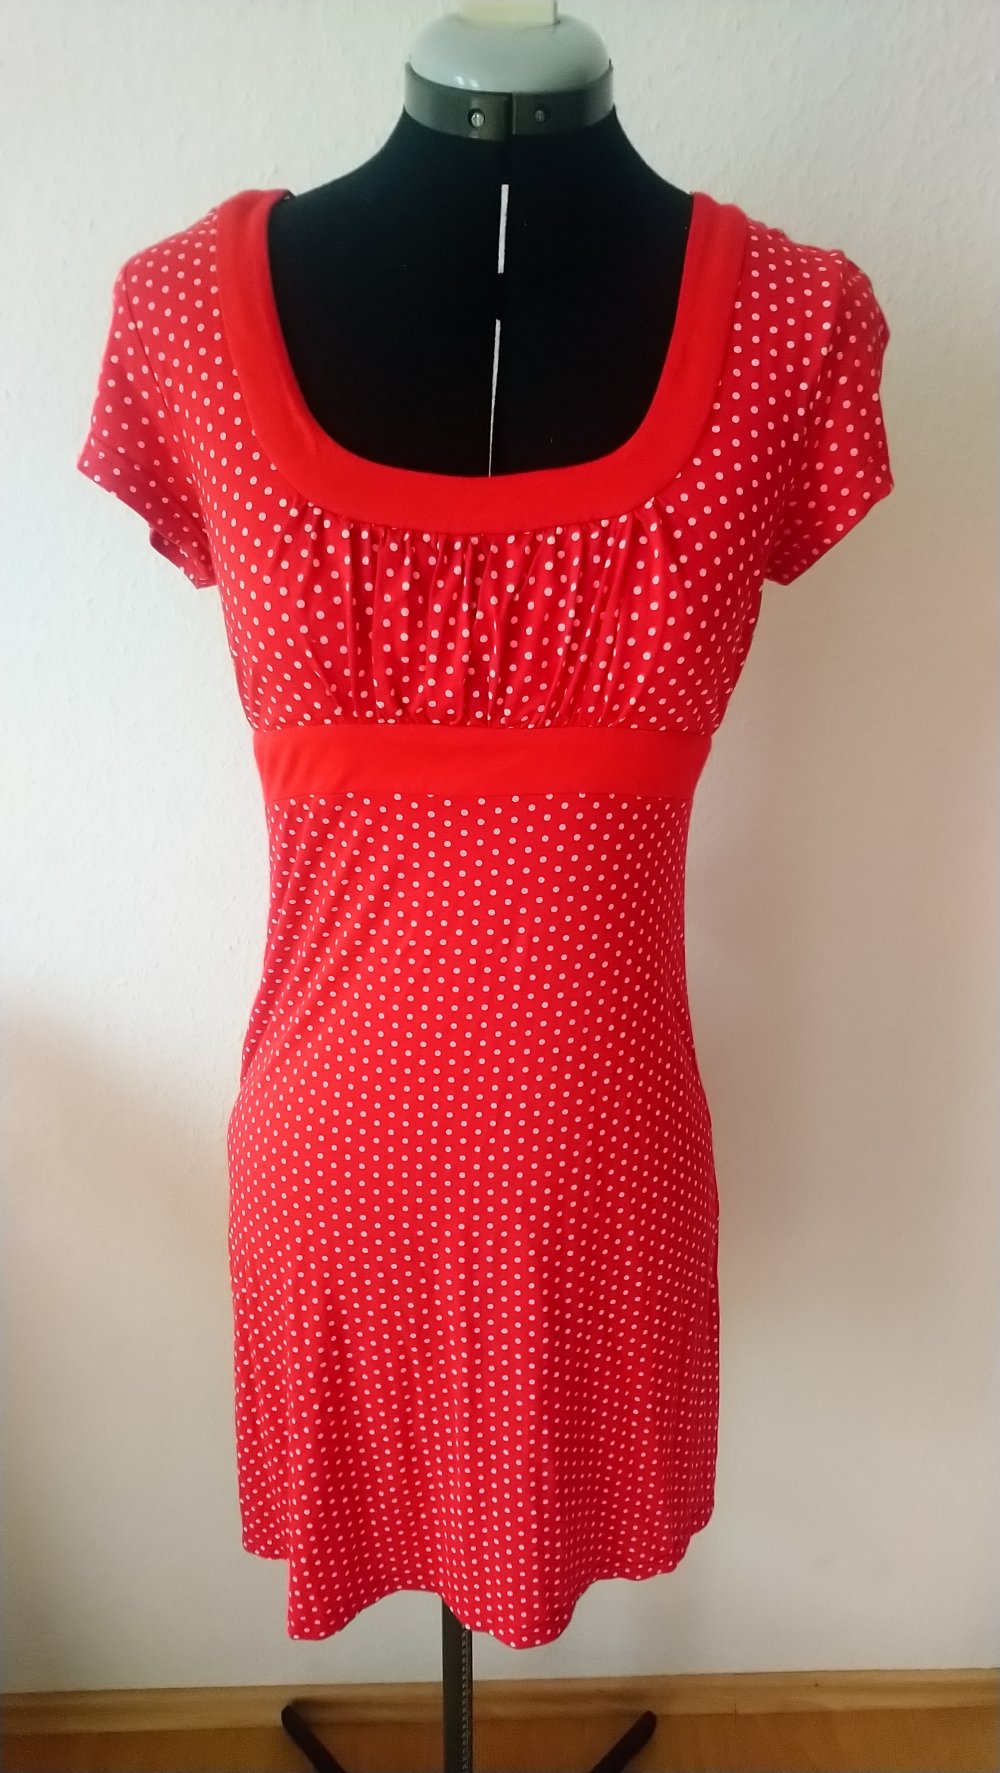 Sommer Kleid rot weiße Punkte